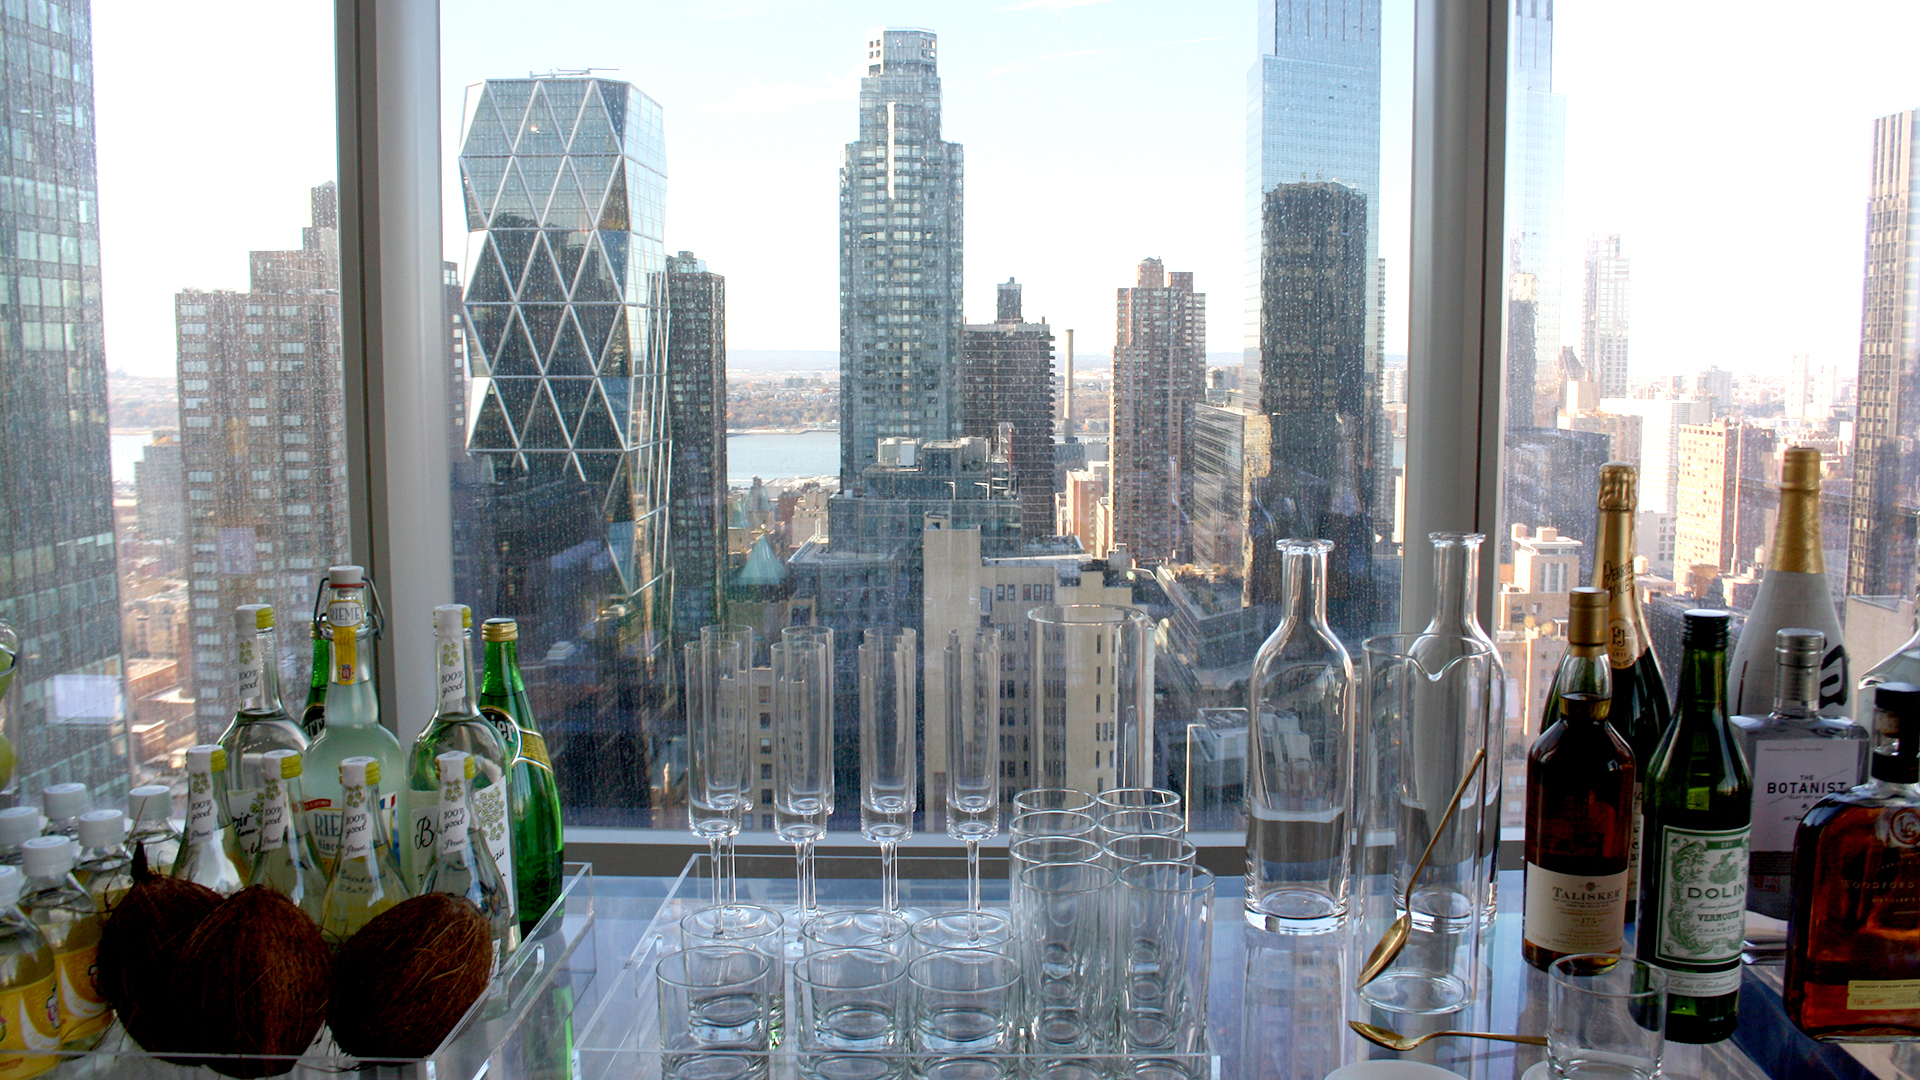 Blick aus einem Fenster des Wohn-Wolkenkratzer "One57" in New York. | picture alliance / dpa